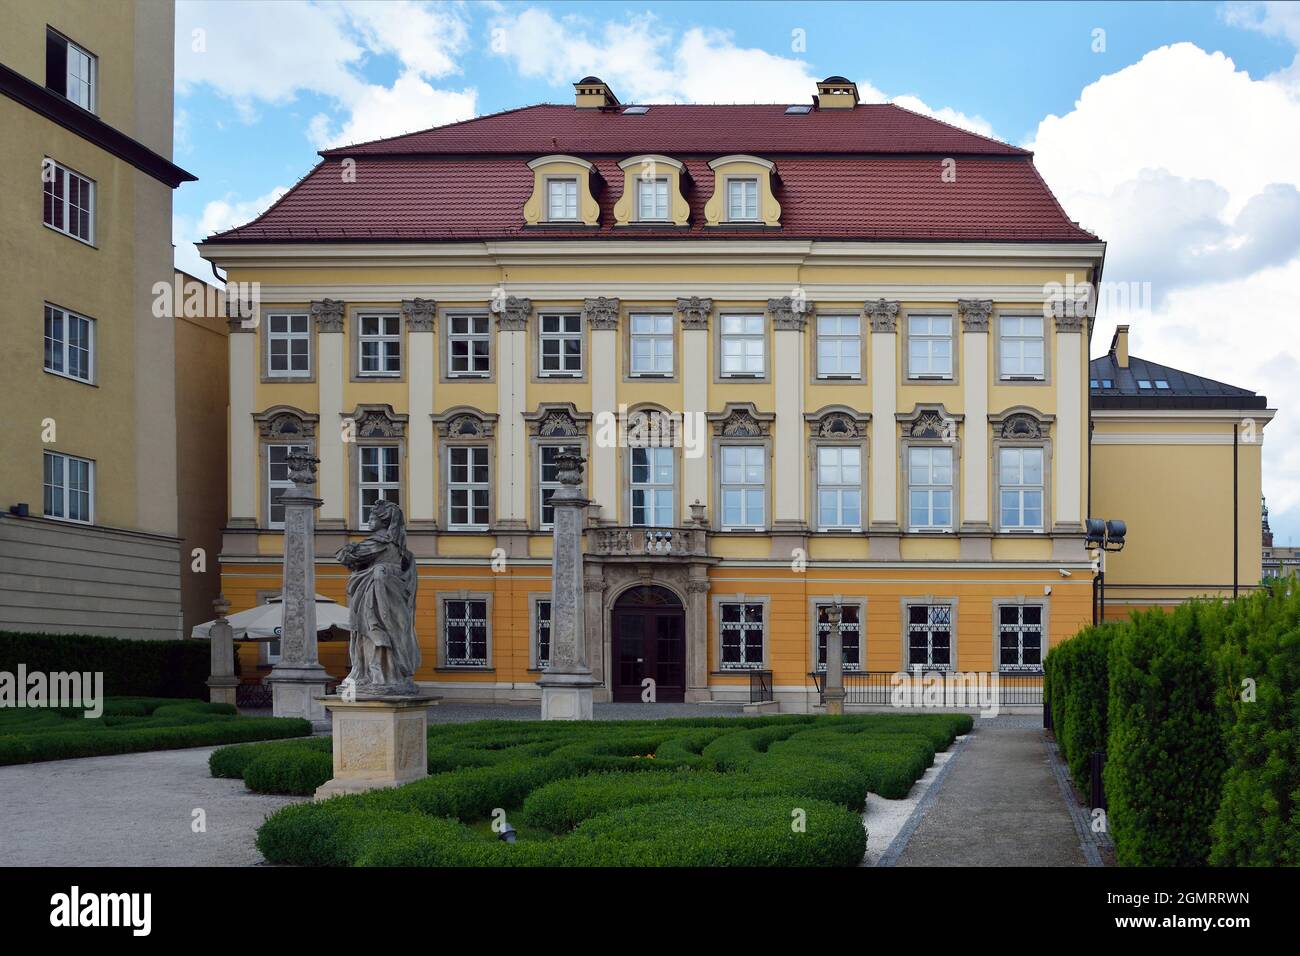 Palacio Real de Wroclaw en Polonia - Palac Krolewski. Originalmente un palacio de la monarquía prusiana y de 1770 la residencia del Hohenzollern en Wropl Foto de stock